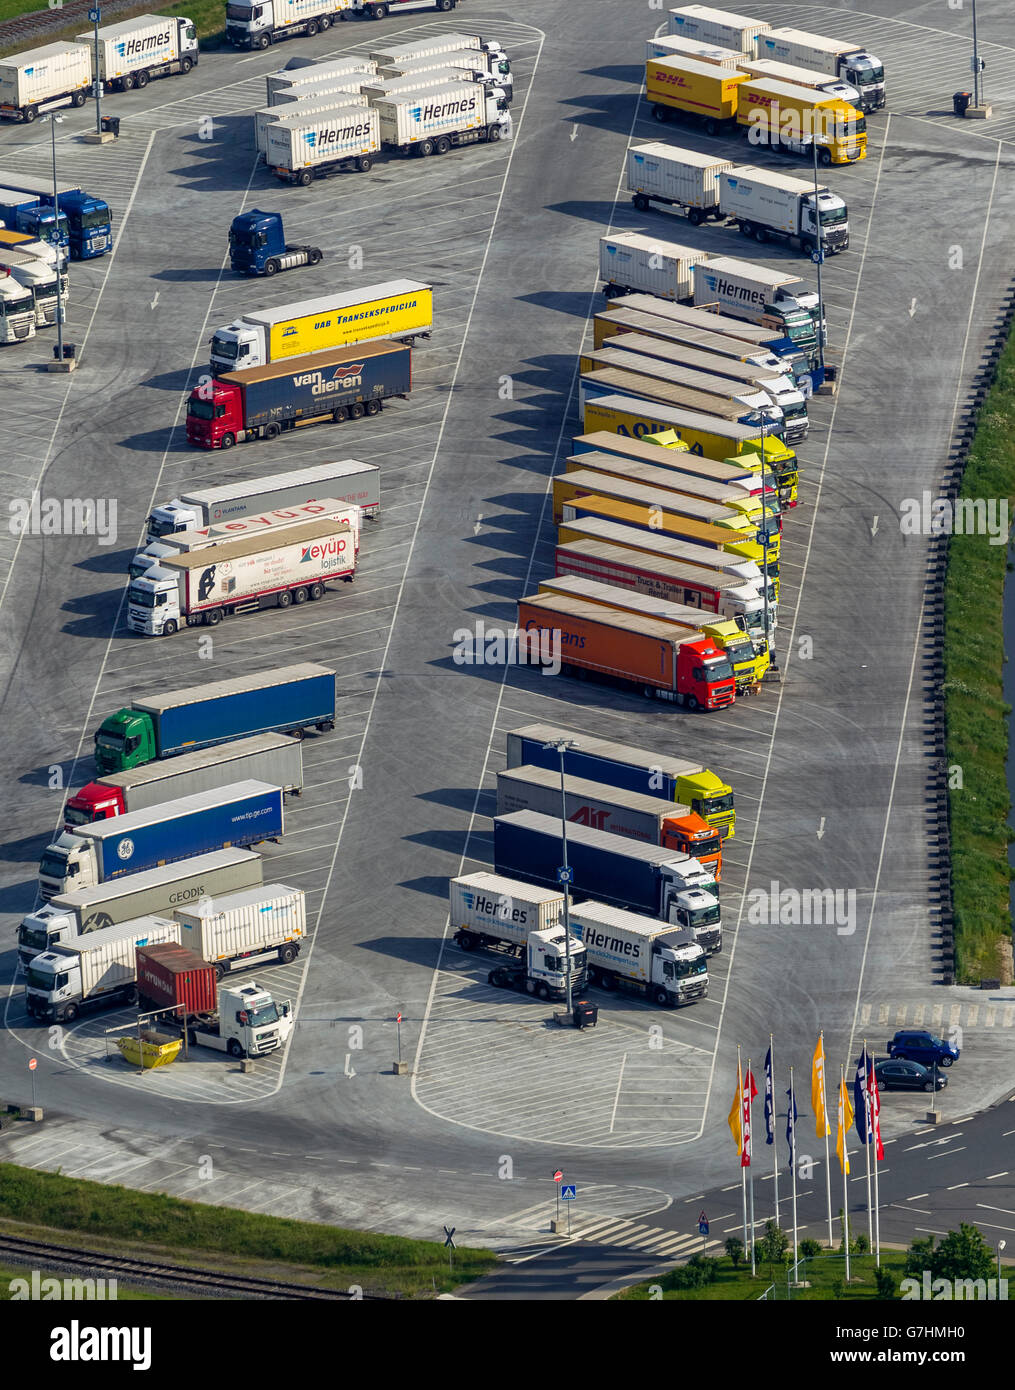 Vue aérienne, centre logistique IKEA Ellingshausen avec les camions, juste-à-temps, la logistique de remorques de camions, d'attente, le chevron Banque D'Images